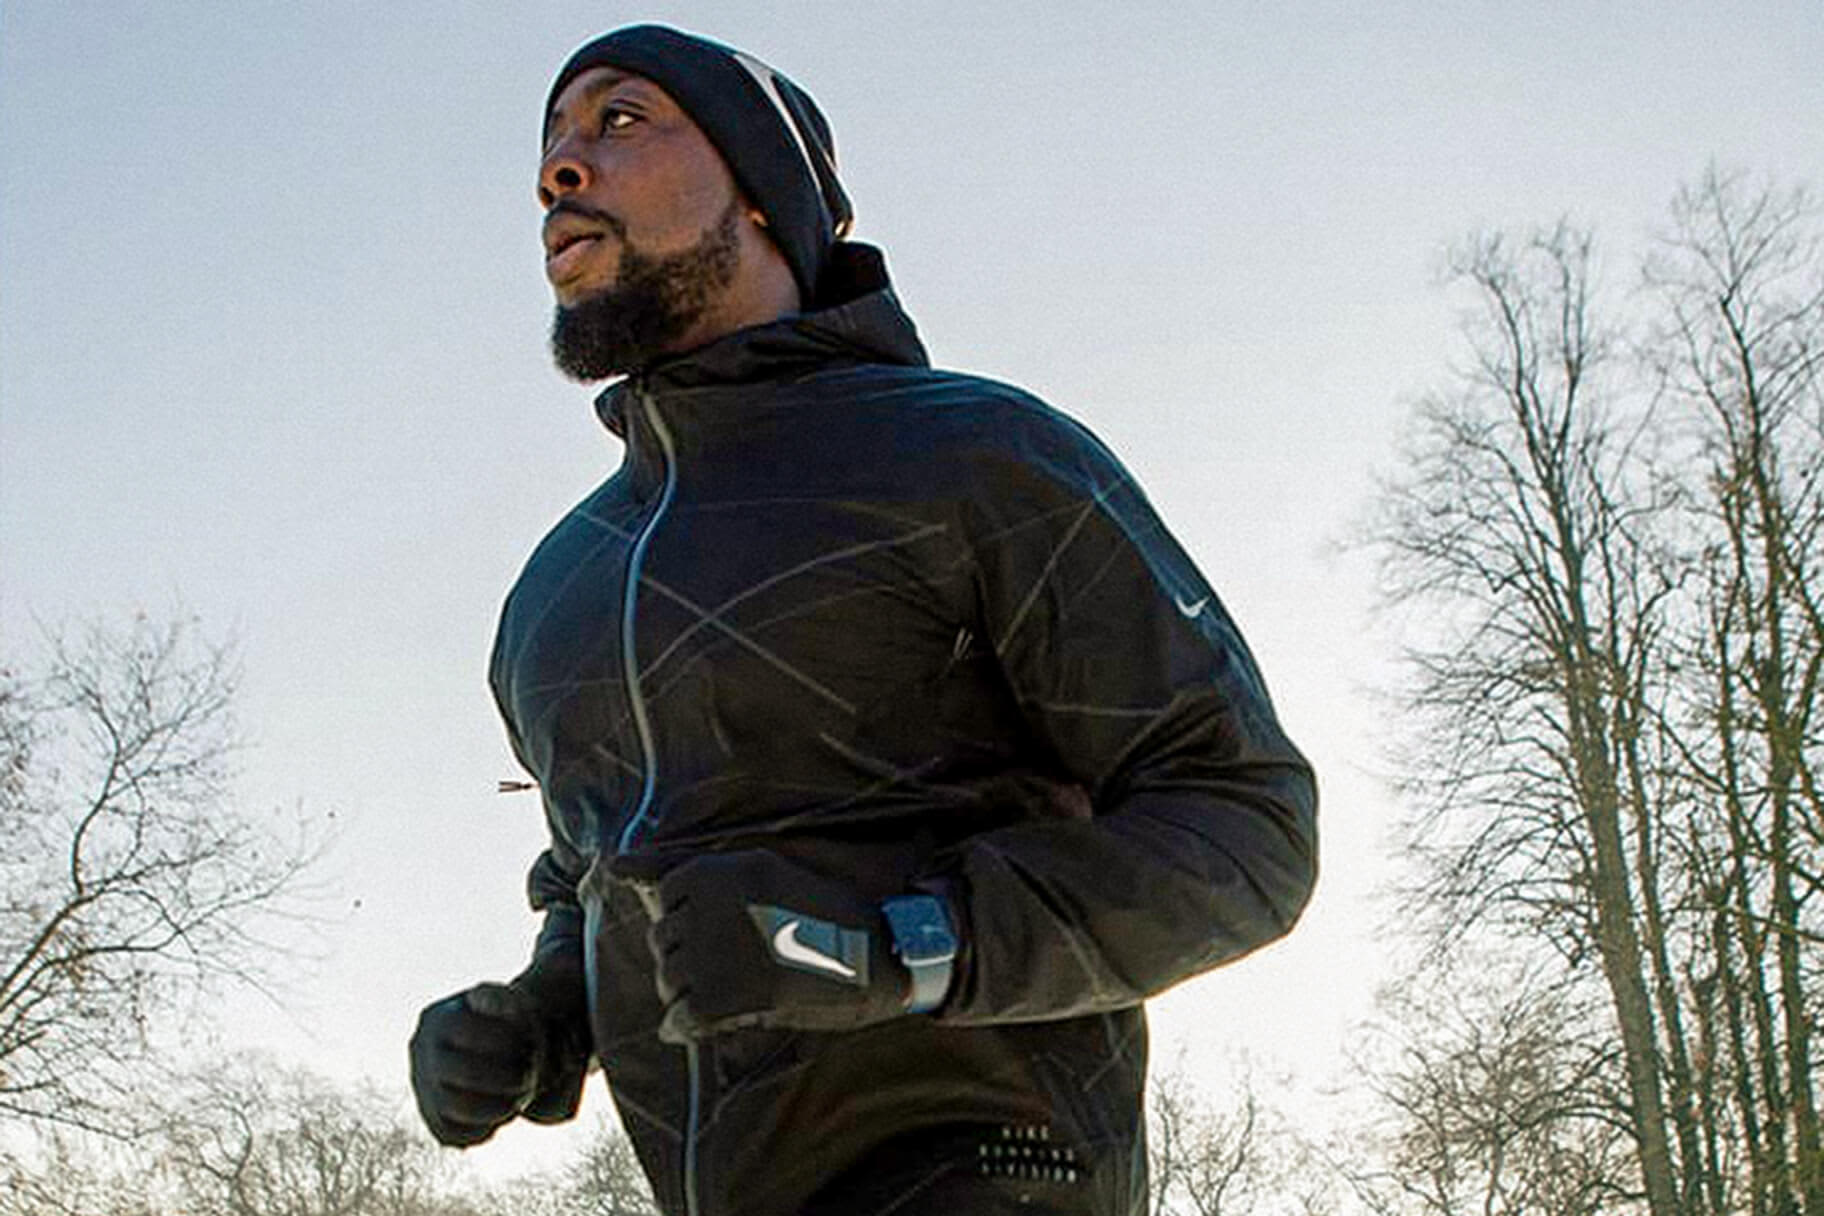 So findest du die beste Nike Laufjacke (oder -weste) für kaltes Wetter